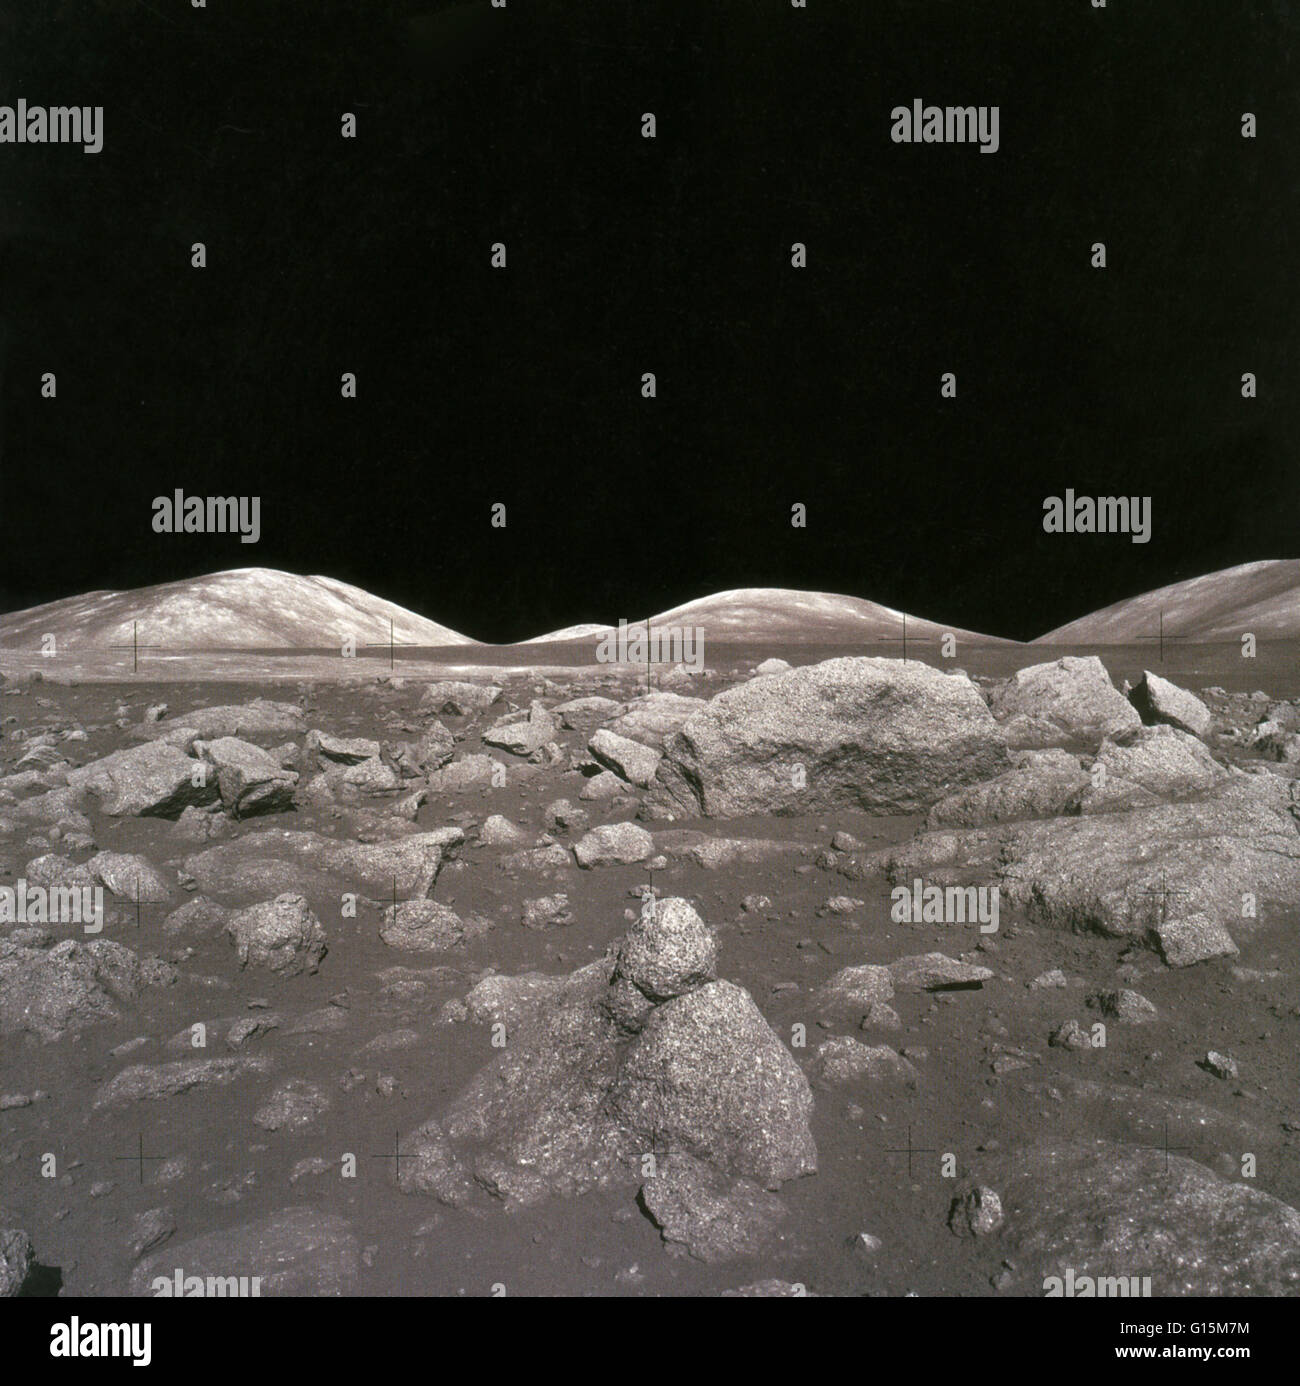 Camelot cratère sur la lune, prises au cours de la mission Apollo 17. Apollo 17 a atterri le 11 décembre 1972 dans la région Taurus-Littrow, à l'est de la mer de la sérénité. Le site a été choisi pour sa diversité géologique. L'astronaute Eugene Cernan a été un Banque D'Images